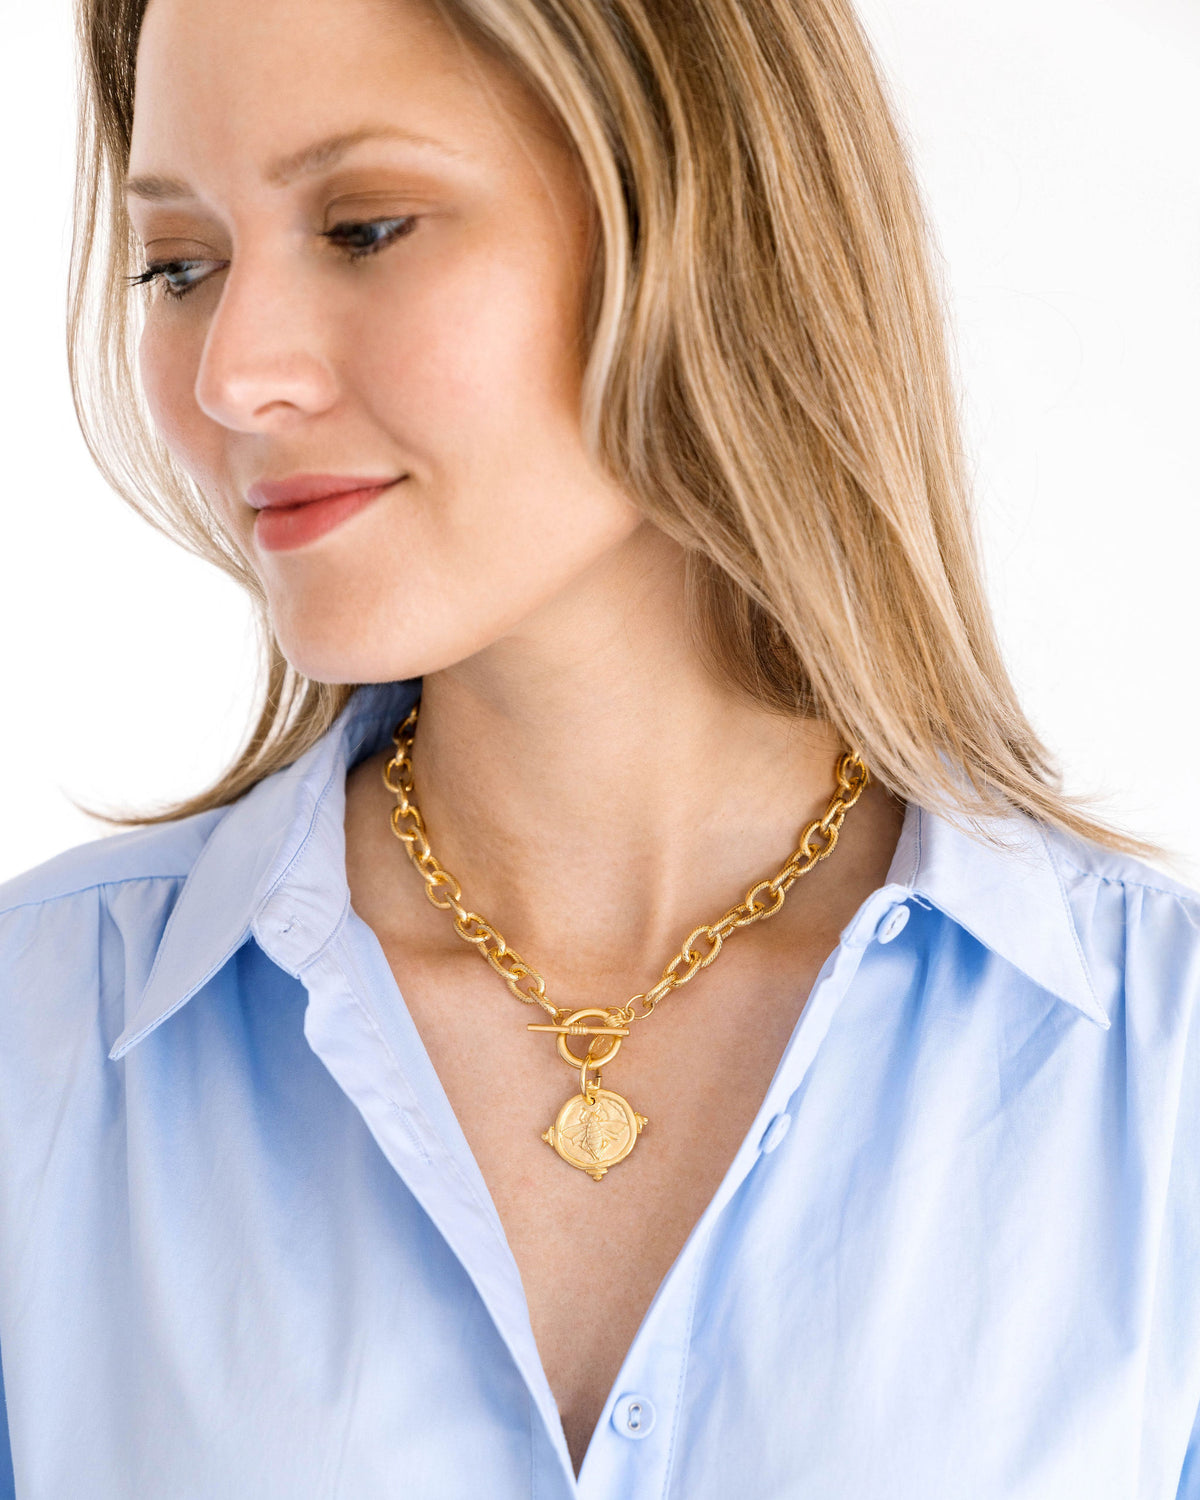 Dezi 16 Inch Gold Herringbone Necklace - Brilliant Earth